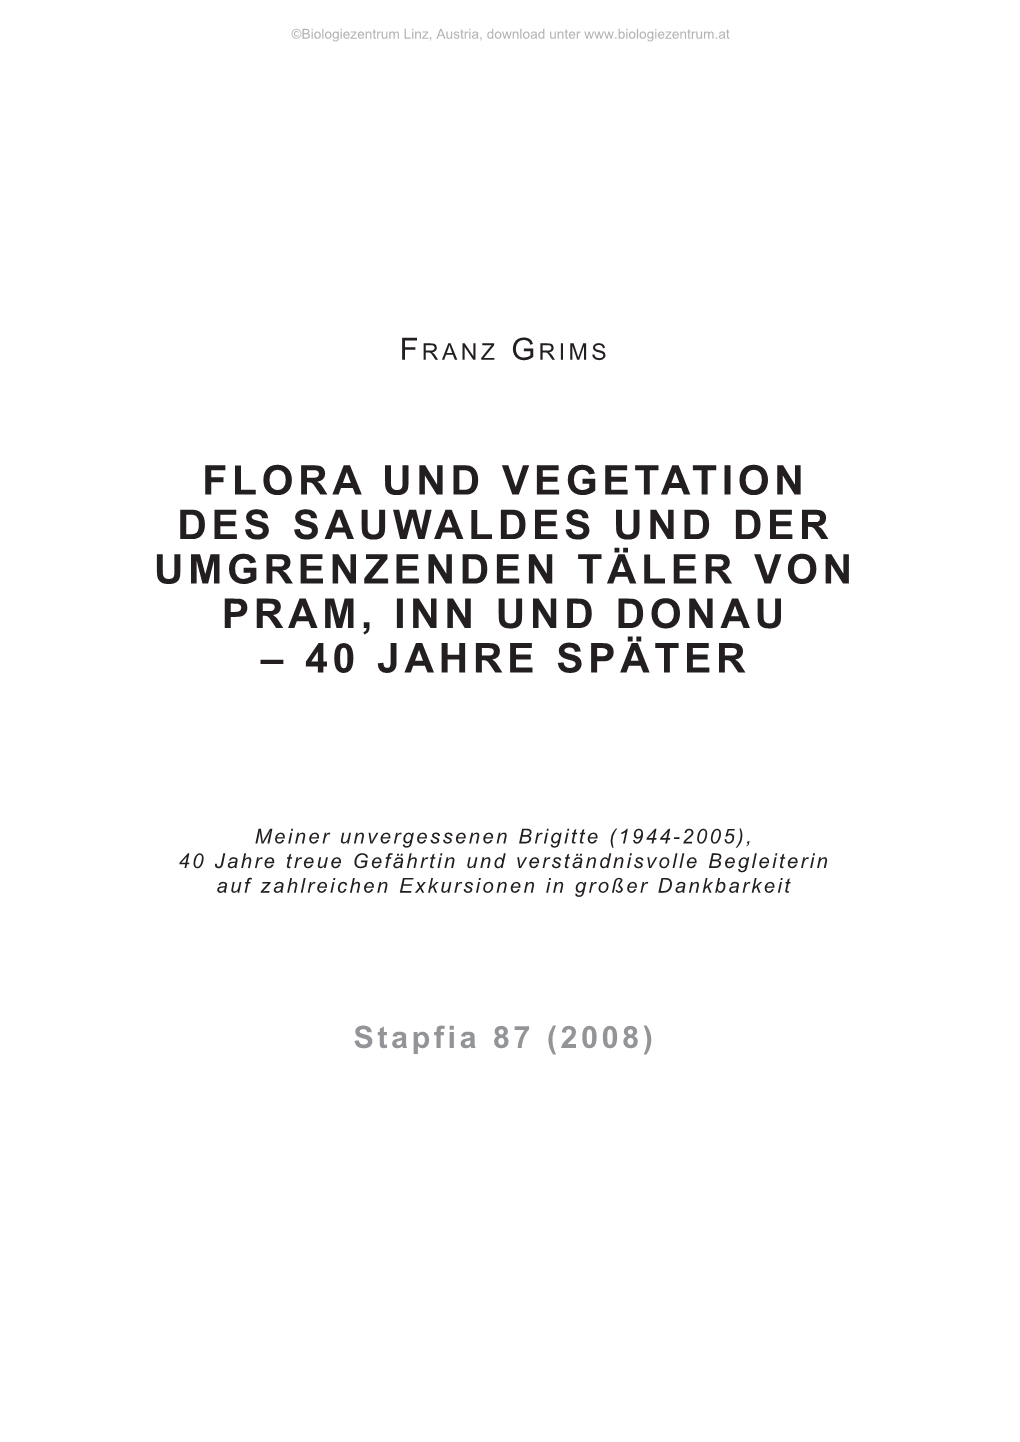 Flora Und Vegetation Des Sauwaldes Und Der Umgrenzenden Täler Von Pram, Inn Und Donau – 40 Jahre Später